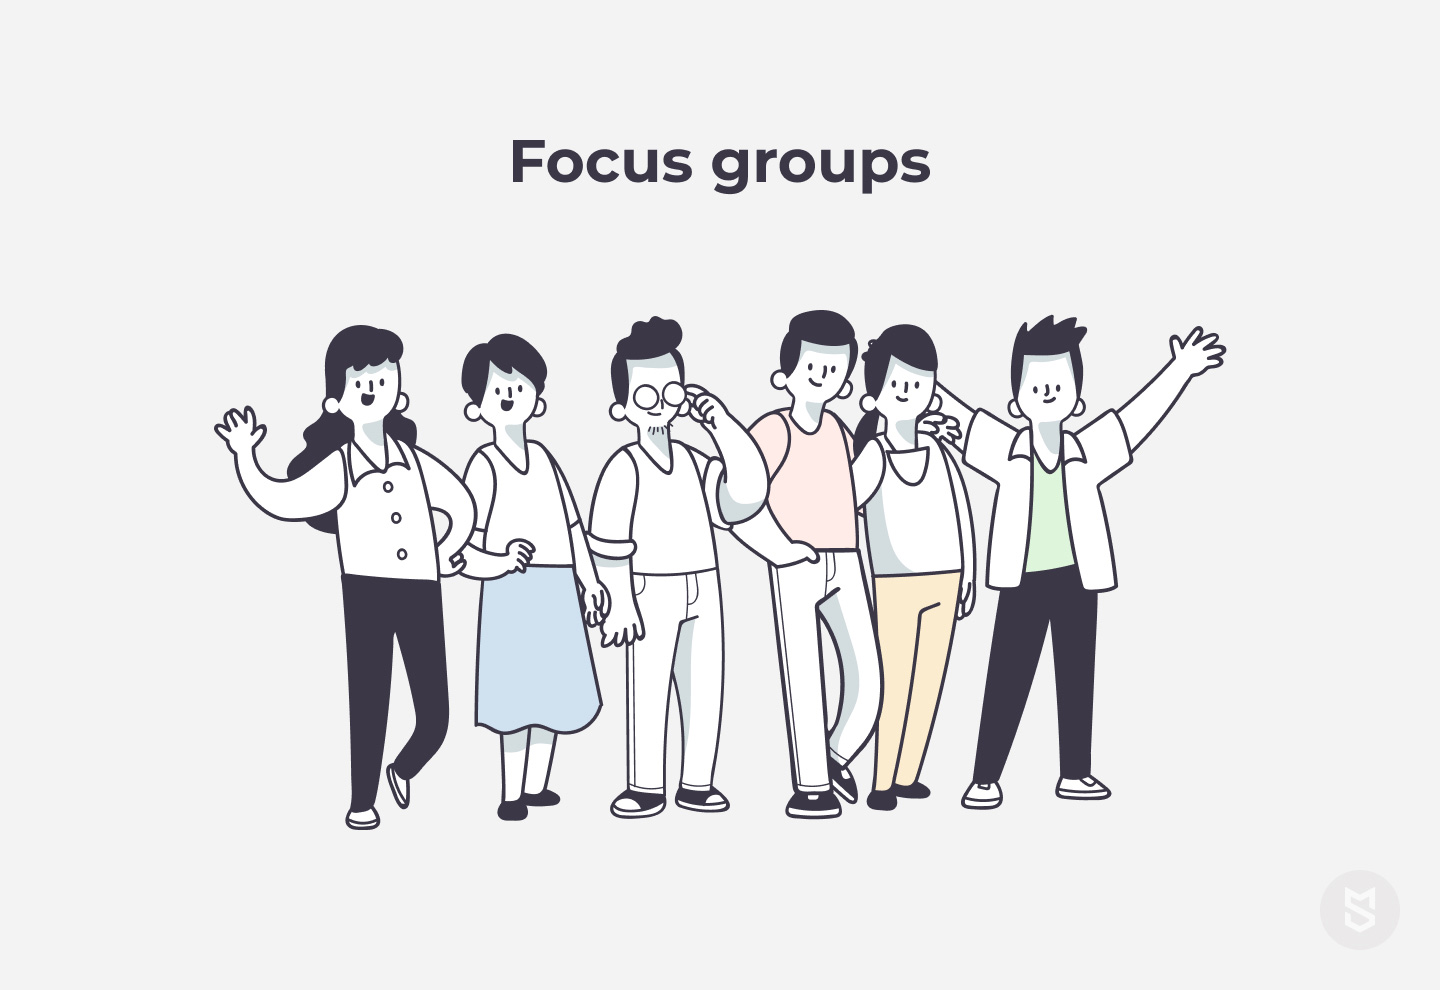 Focus groups